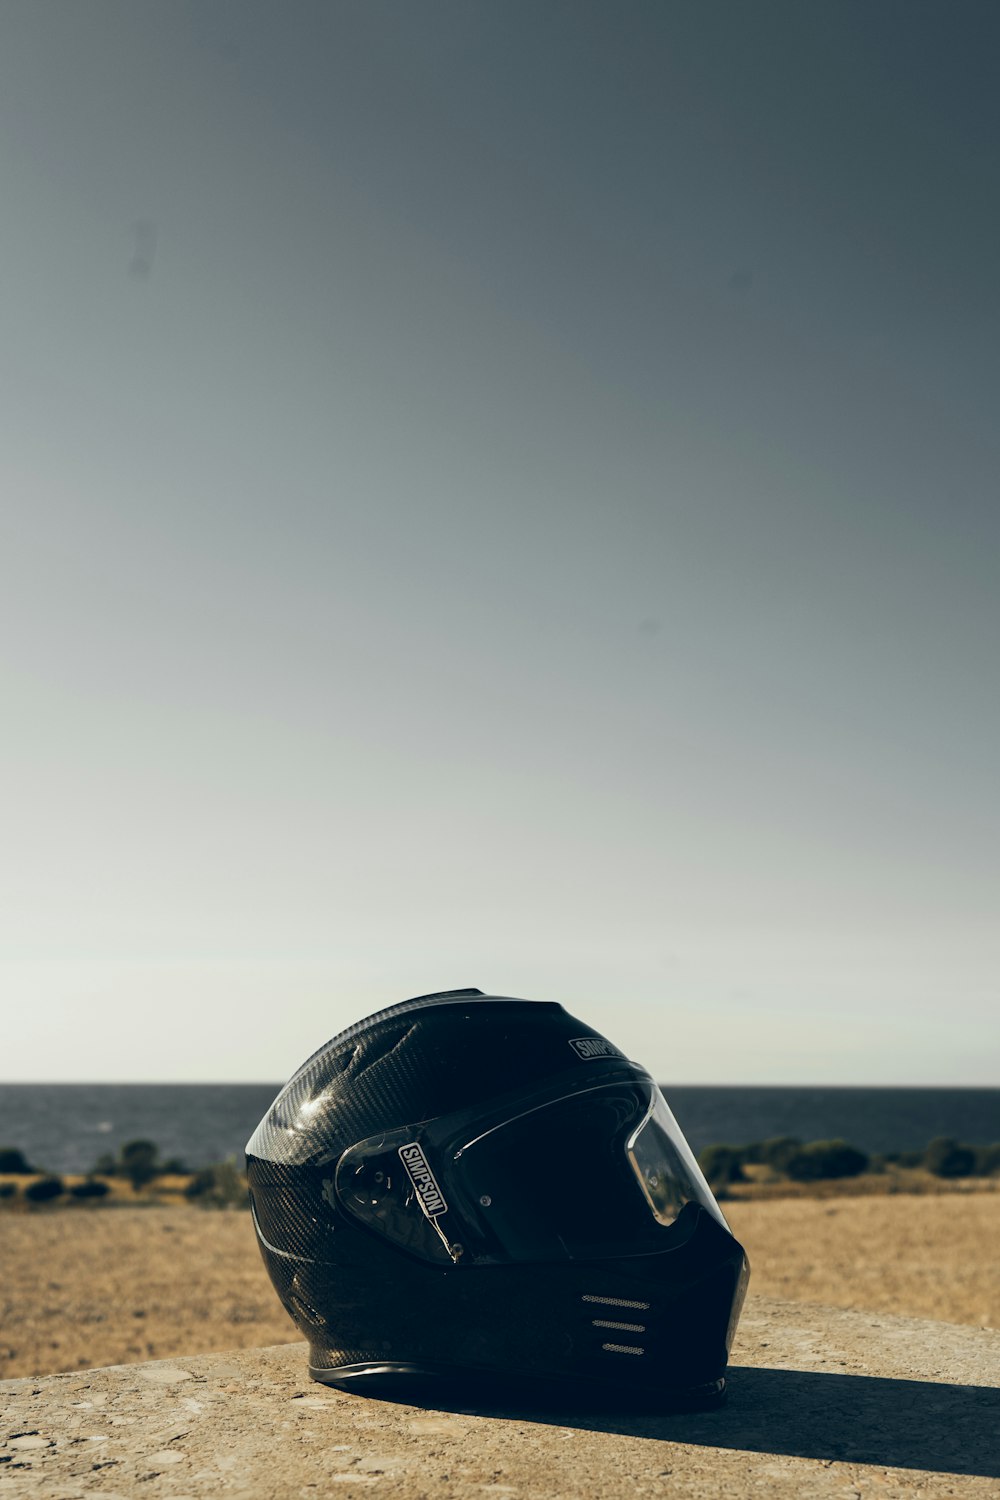 black motorcycle helmet on brown sand during daytime